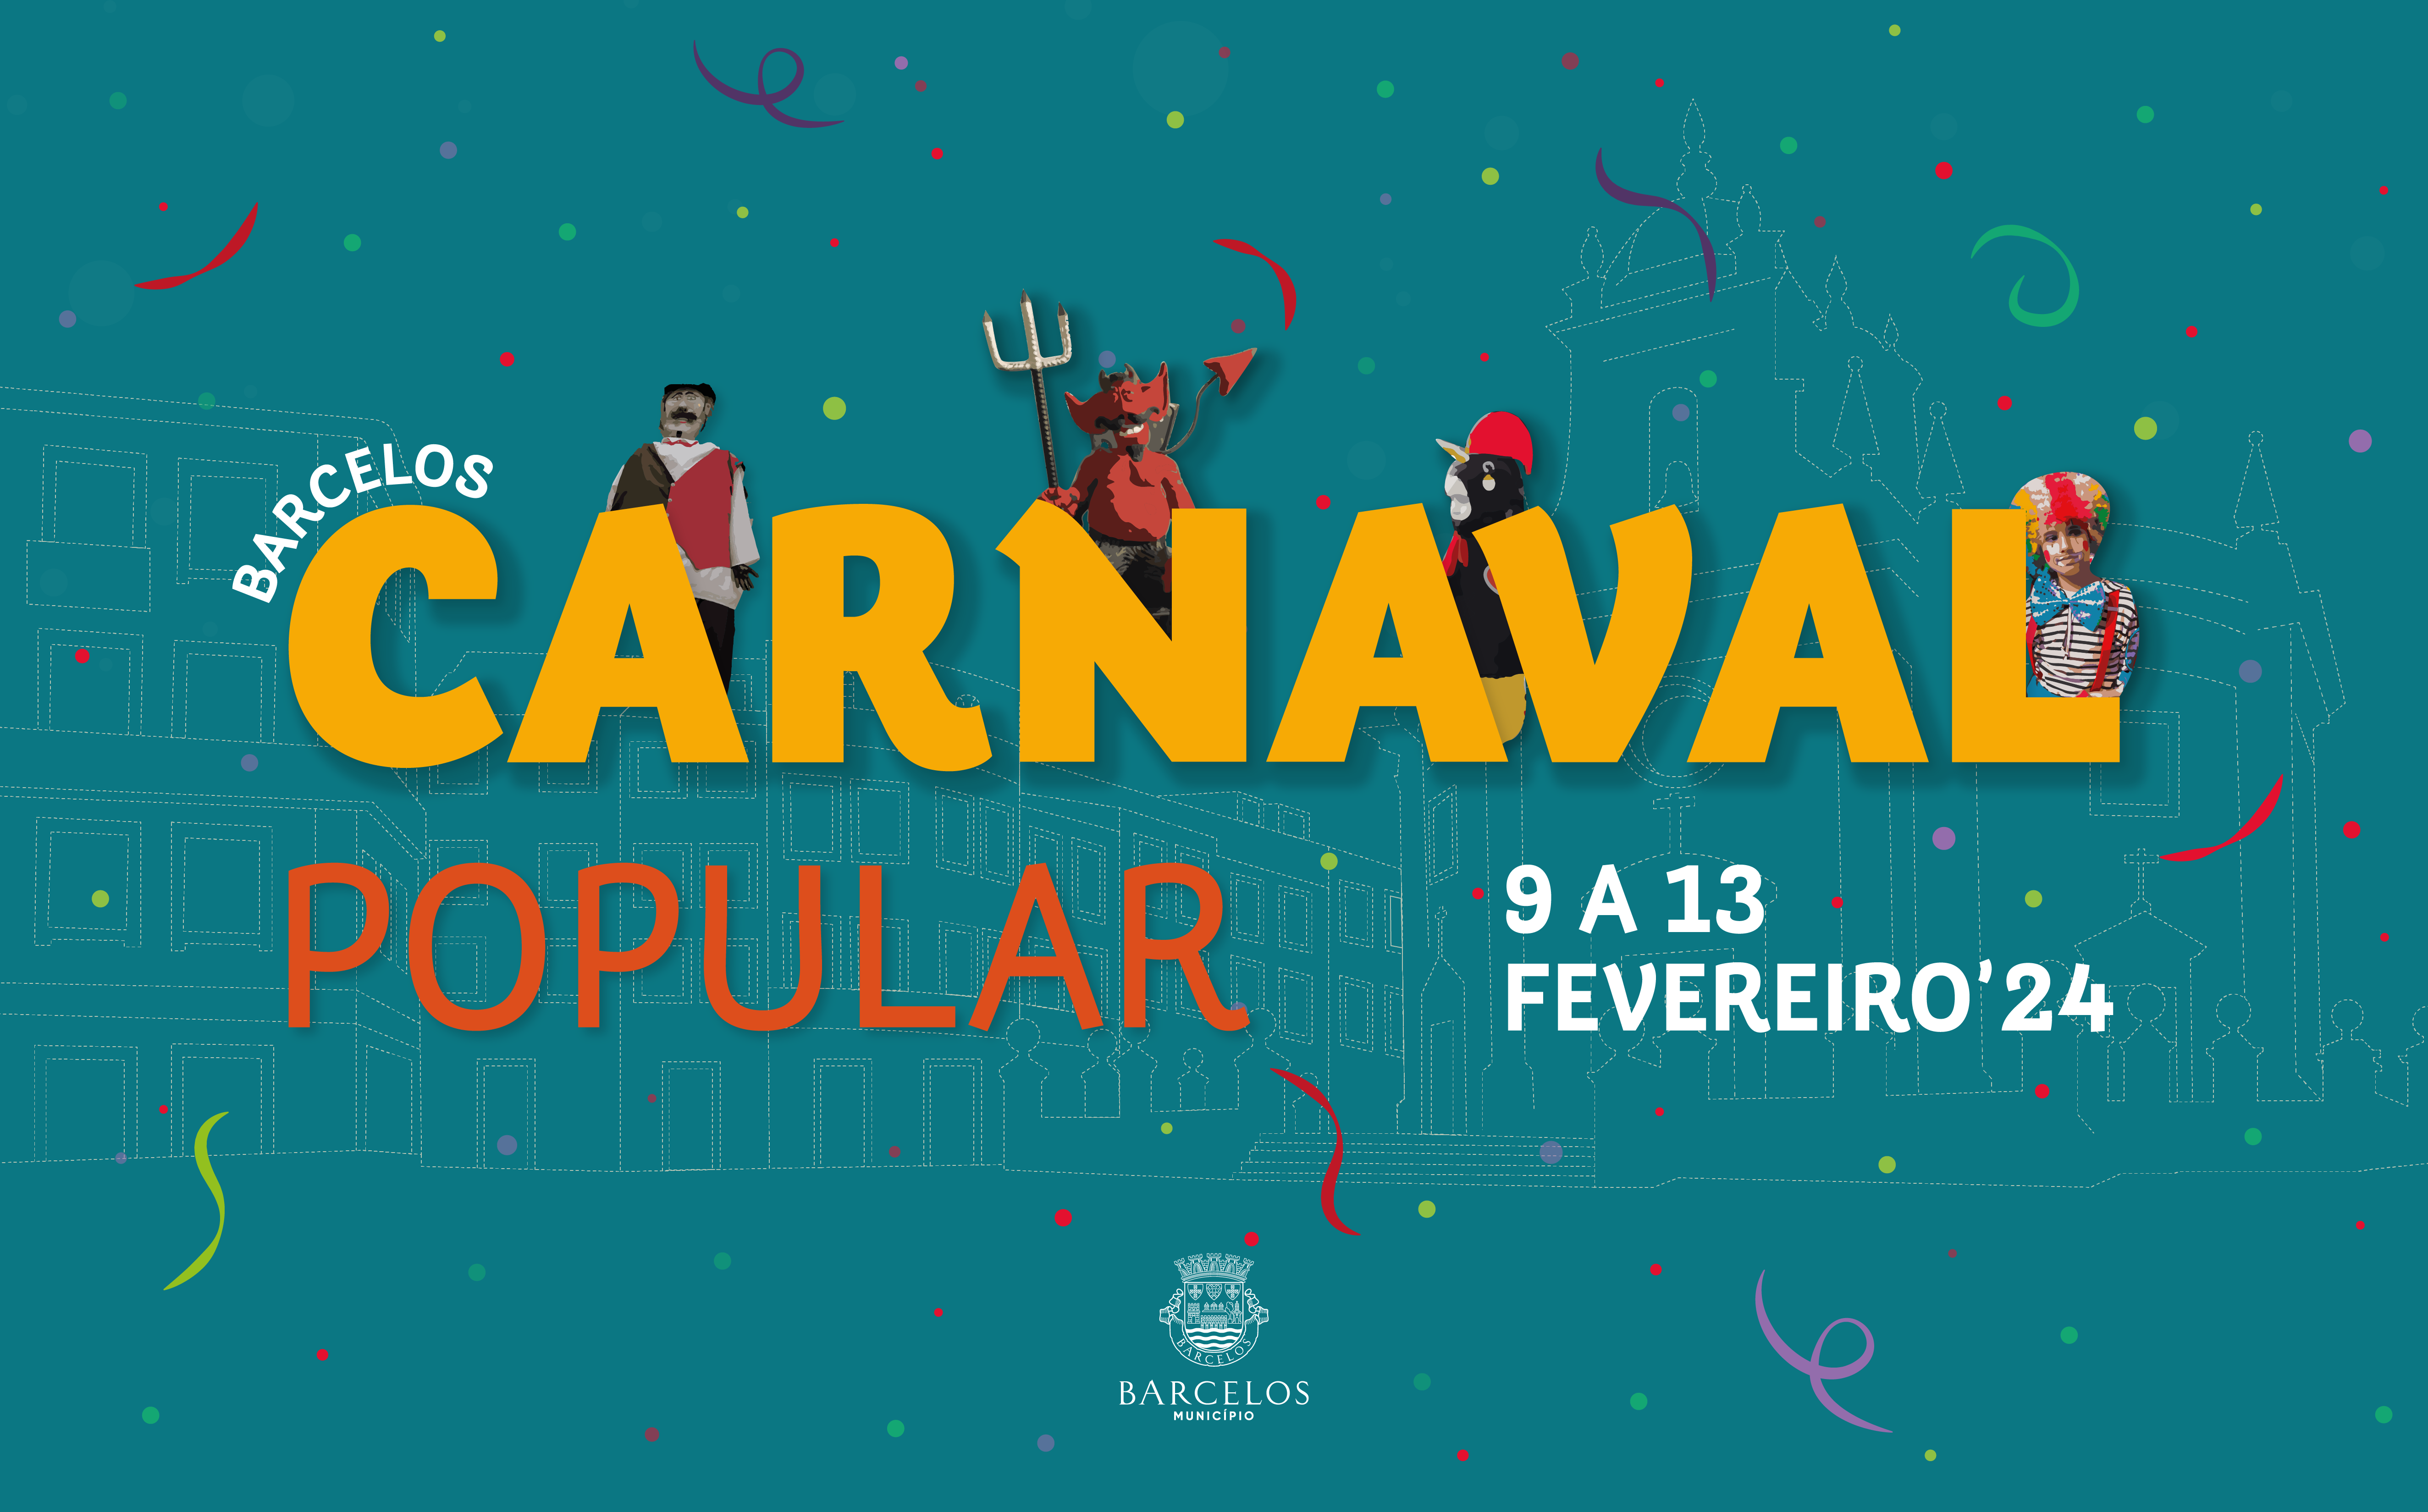 Quatro dias para foliar no Carnaval Popular de Barcelos